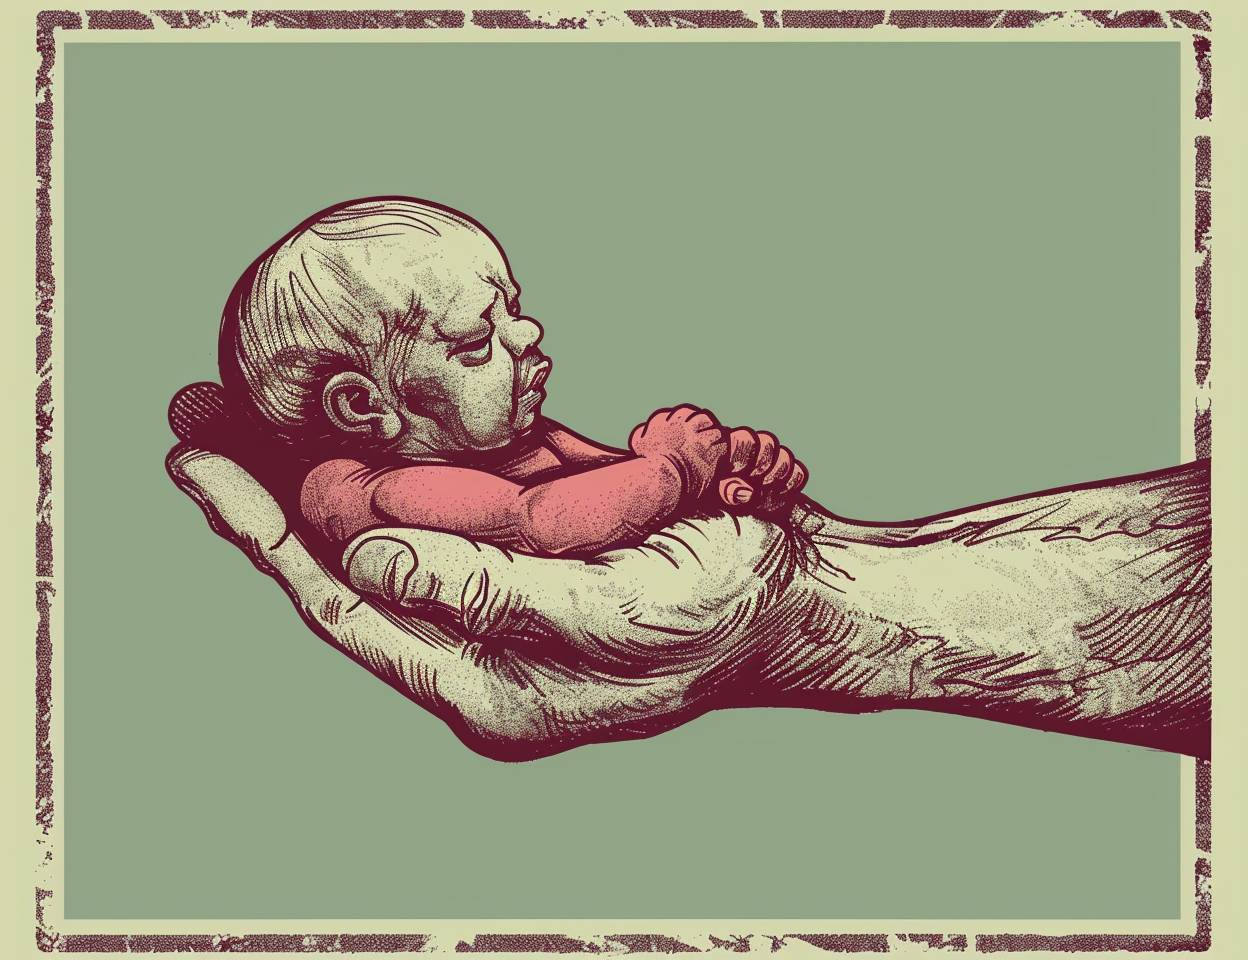 インクとペンスタイルで描かれた、R Crumbスタイルの作品の中の初期の人間の赤ちゃんが手の中に描かれているコミックパネル。淡い緑色の背景に深紅色が施されている。このキャラクターは、生活から引用されるかのように描かれており、顔の特徴や体の比率はない。一つの腕が手の中に小さな男の子を抱いている、クローズアップのショットです。